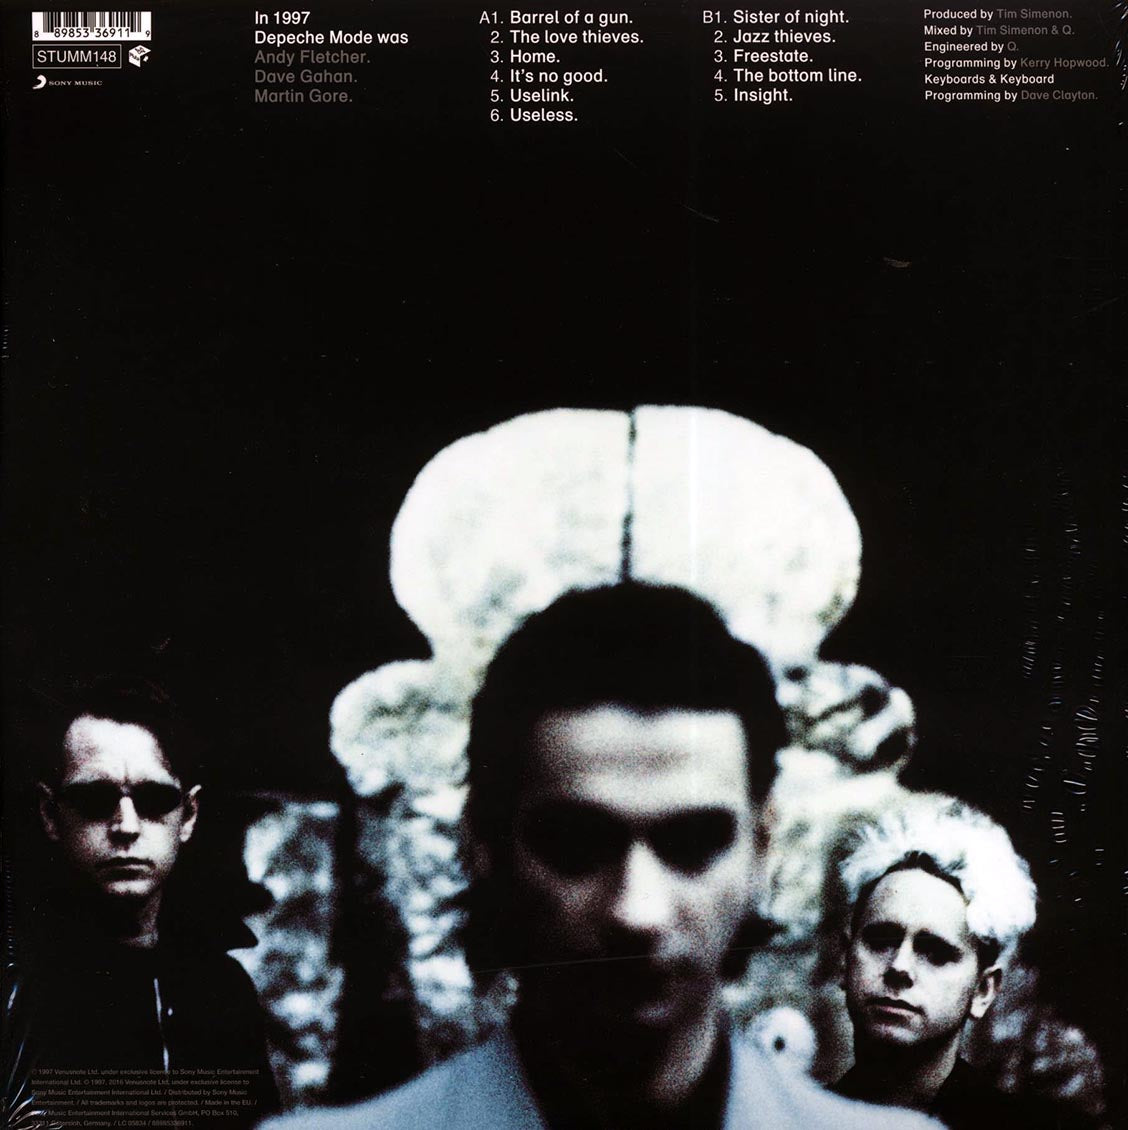 Depeche Mode - Ultra (2xLP) (remastered) - Vinyl LP, LP